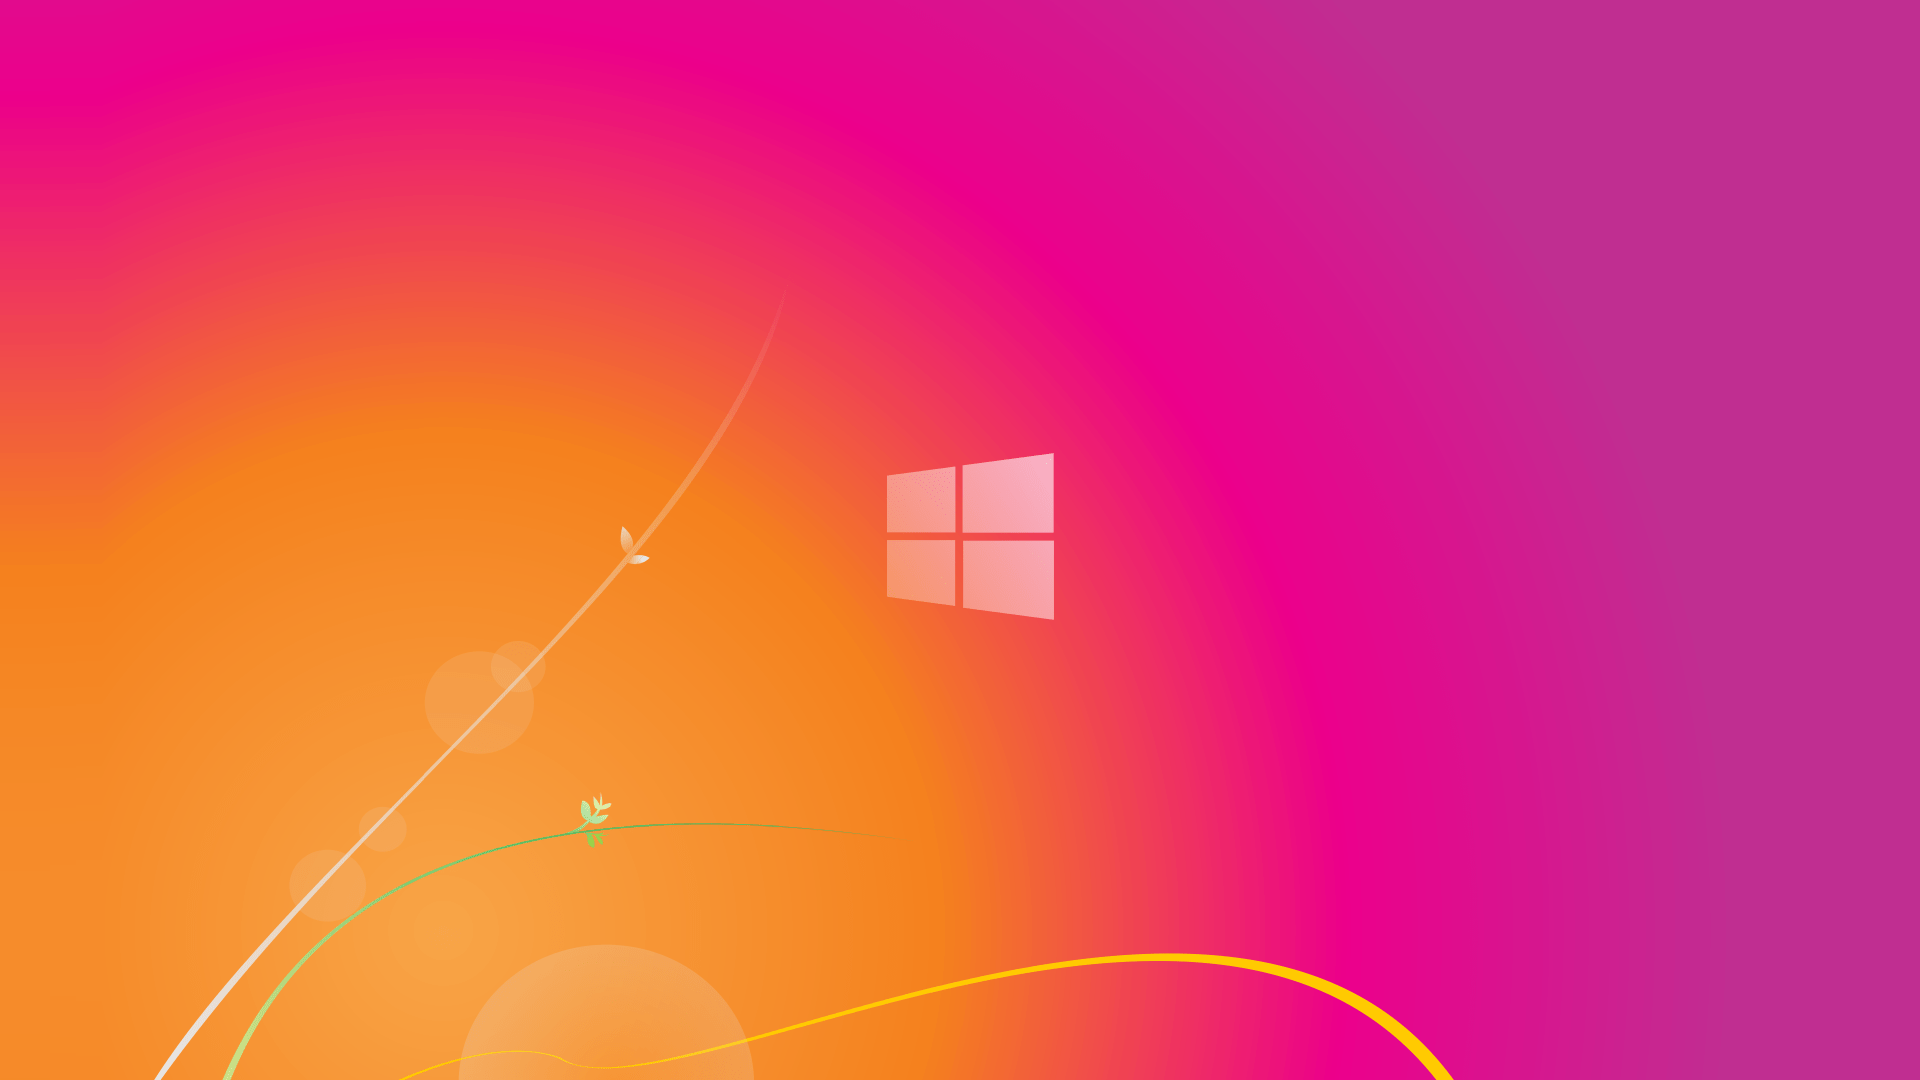 Hình nền Windows 10 hồng đẹp nhất đang chờ đón bạn. Với sắc hồng tươi tắn và mẫu logo đơn giản nhưng đầy ấn tượng, bạn sẽ có một màn hình desktop tràn đầy nữ tính và phong cách. Hãy tải ngay để tự tin khoe sự thẩm mỹ của mình với mọi người.